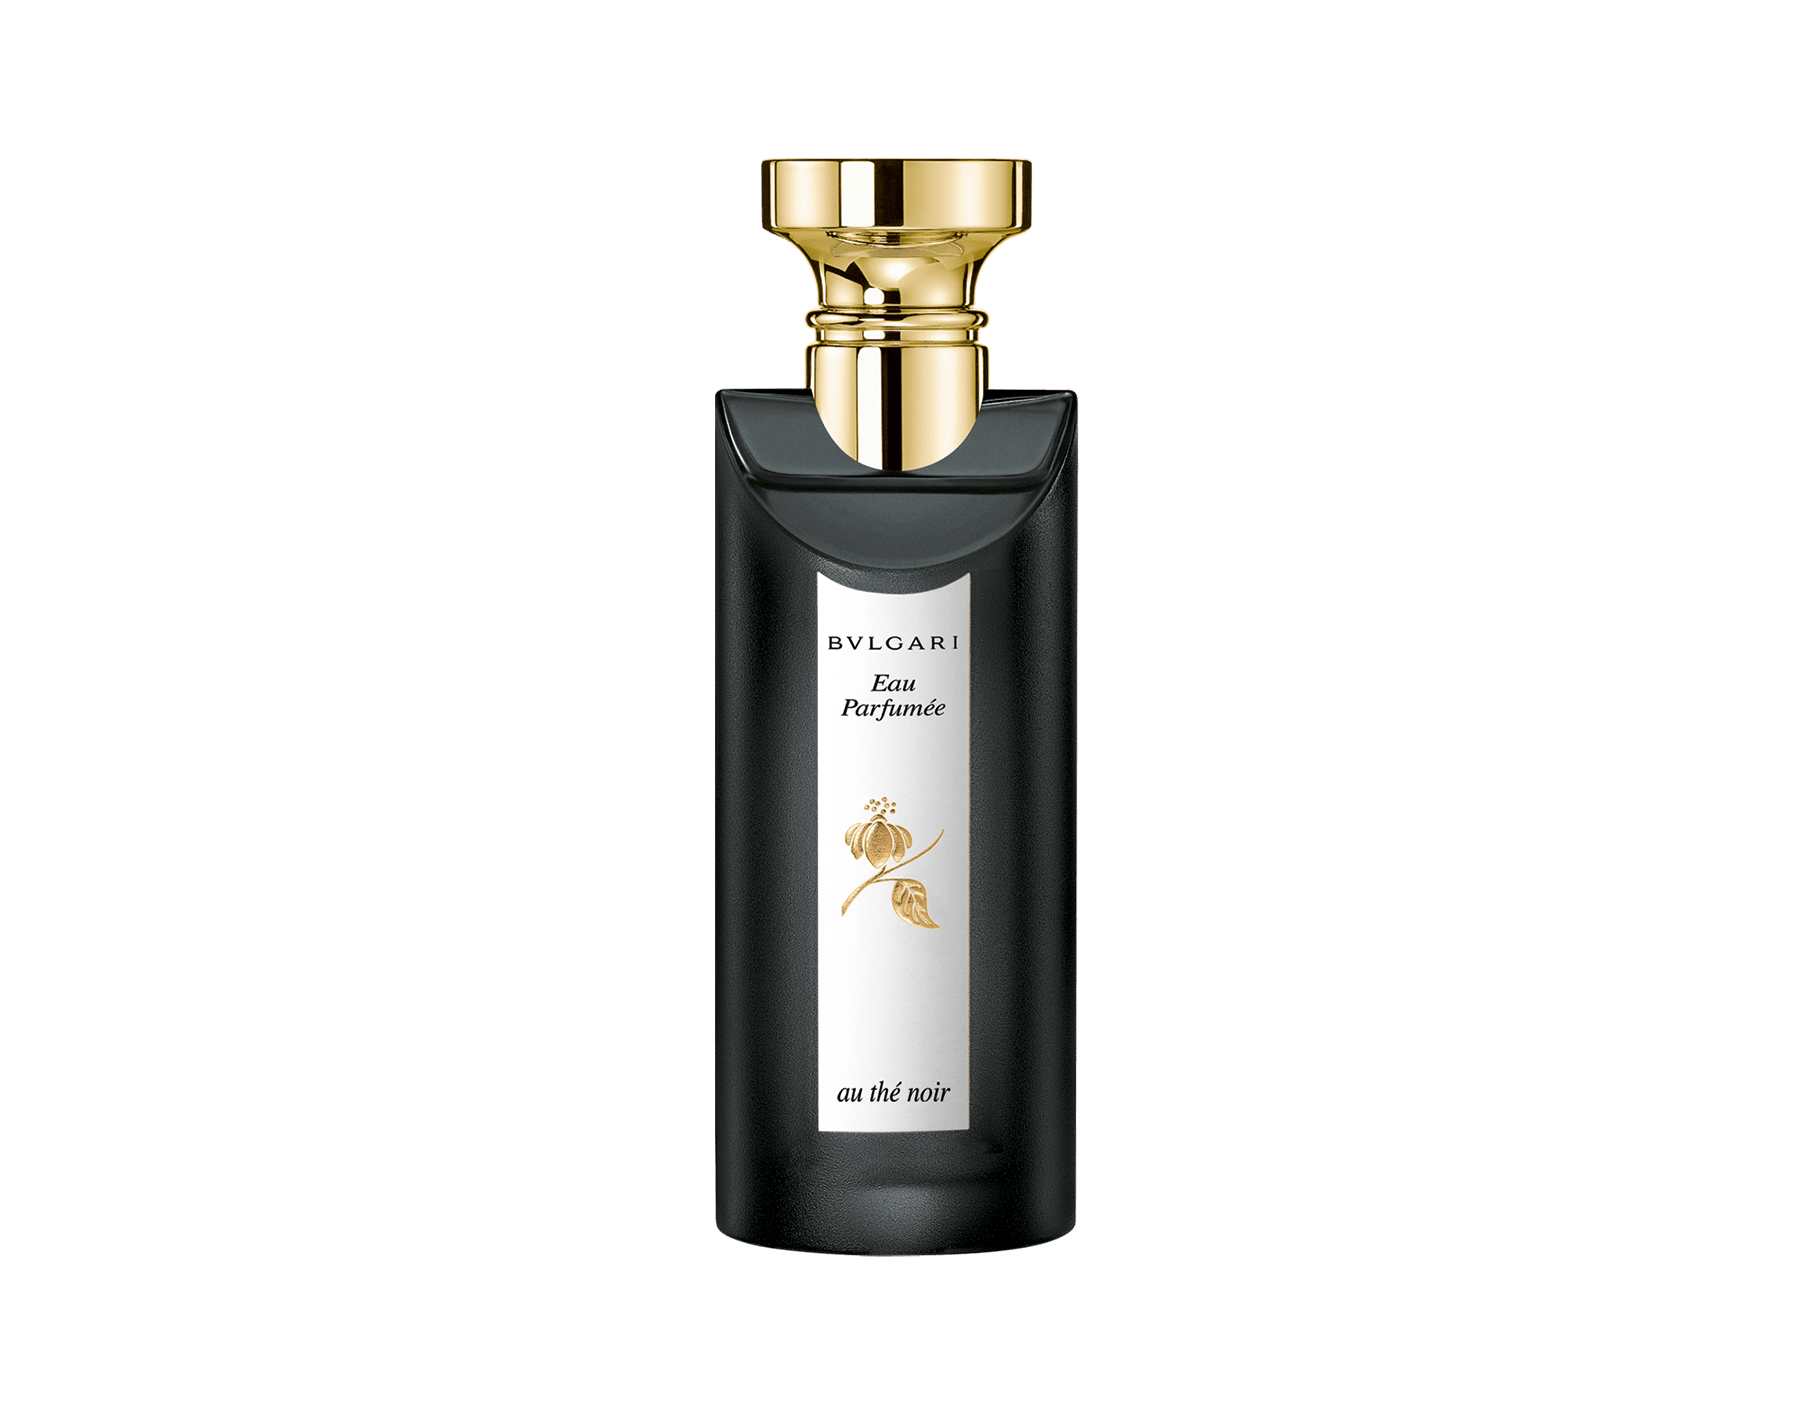 bvlgari perfume history